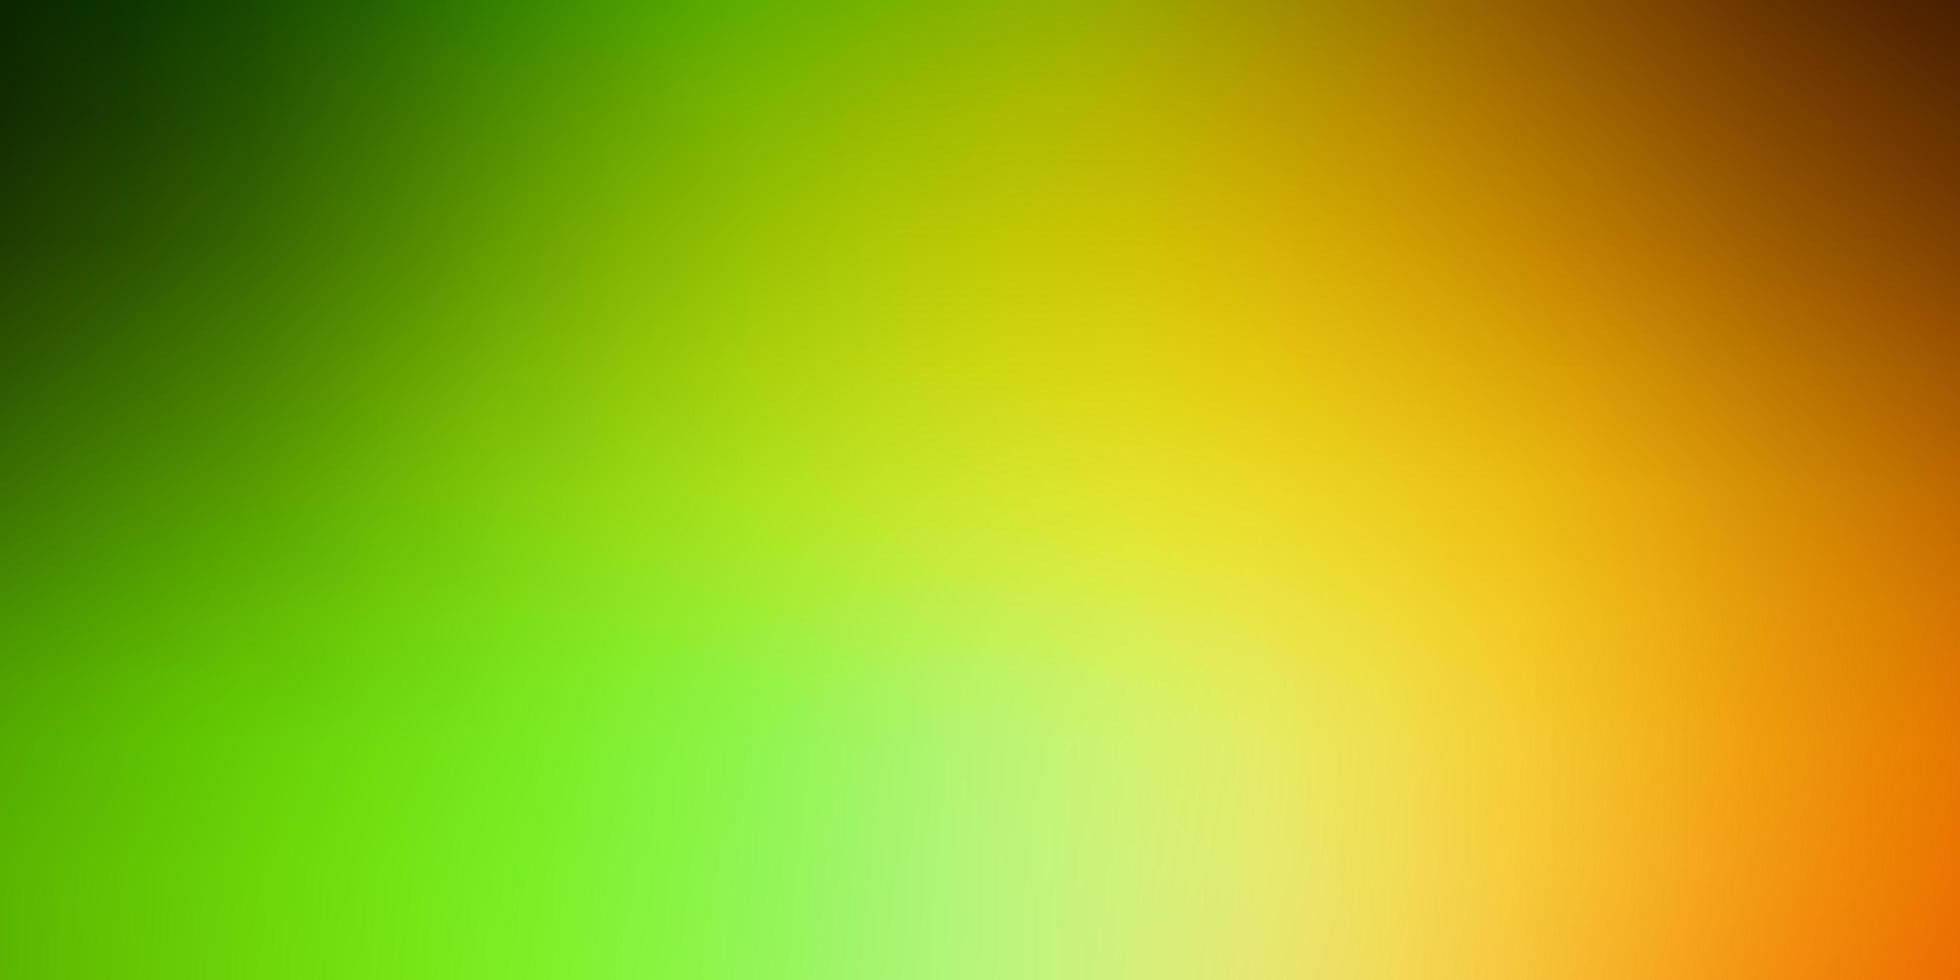 fundo abstrato do vetor verde escuro e amarelo.